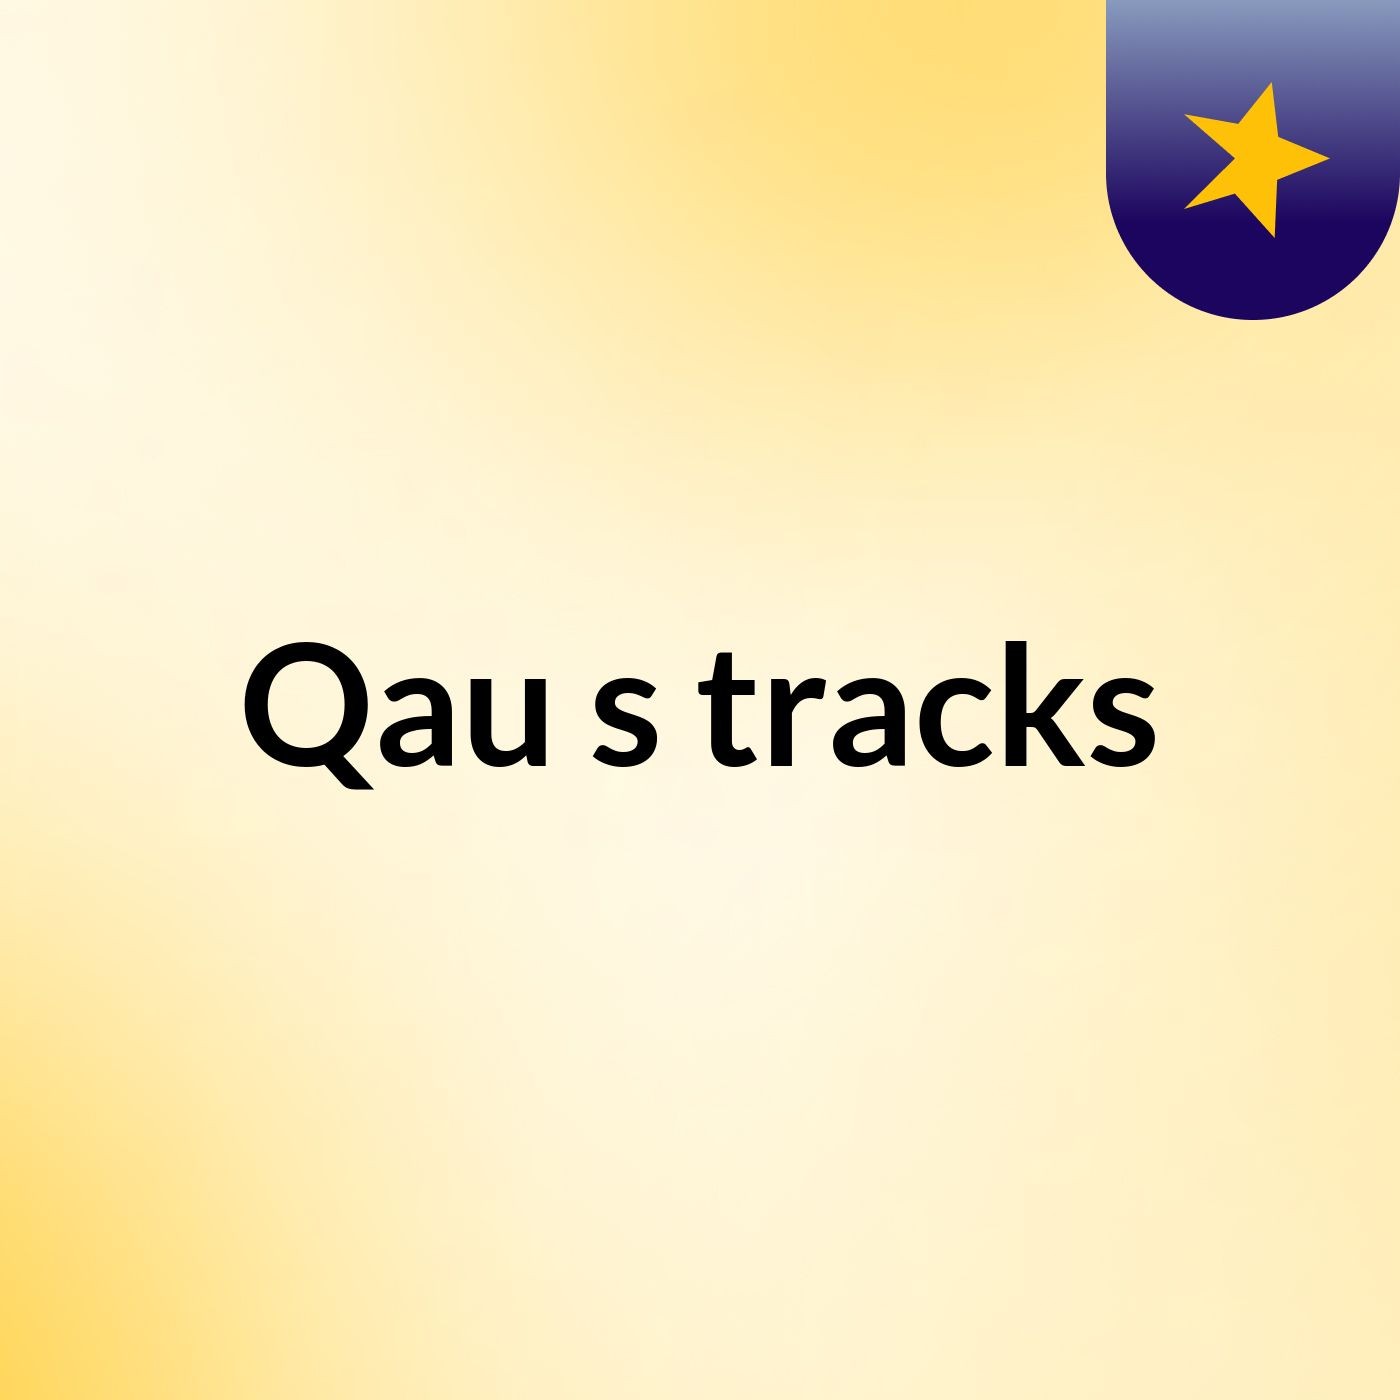 Qau's tracks